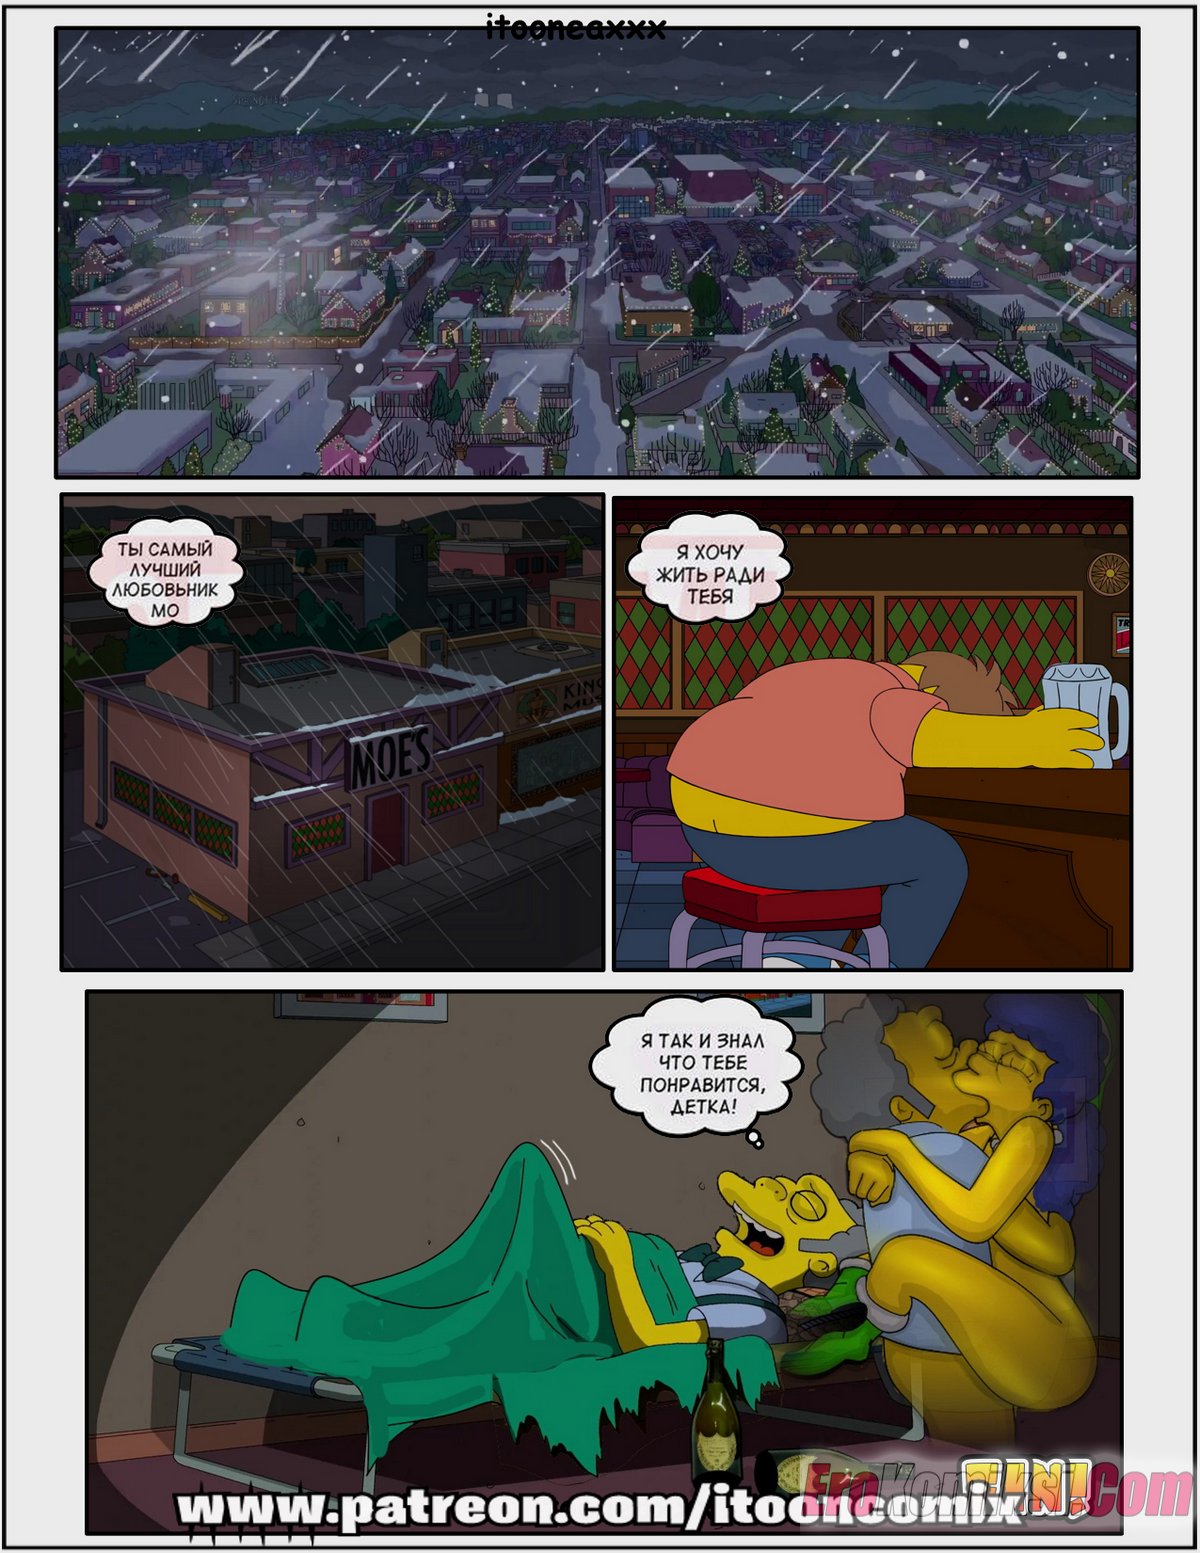 18-18 Порно комикс Симпсоны. Часть 11. Рождество Часть 2: Месть Мо.